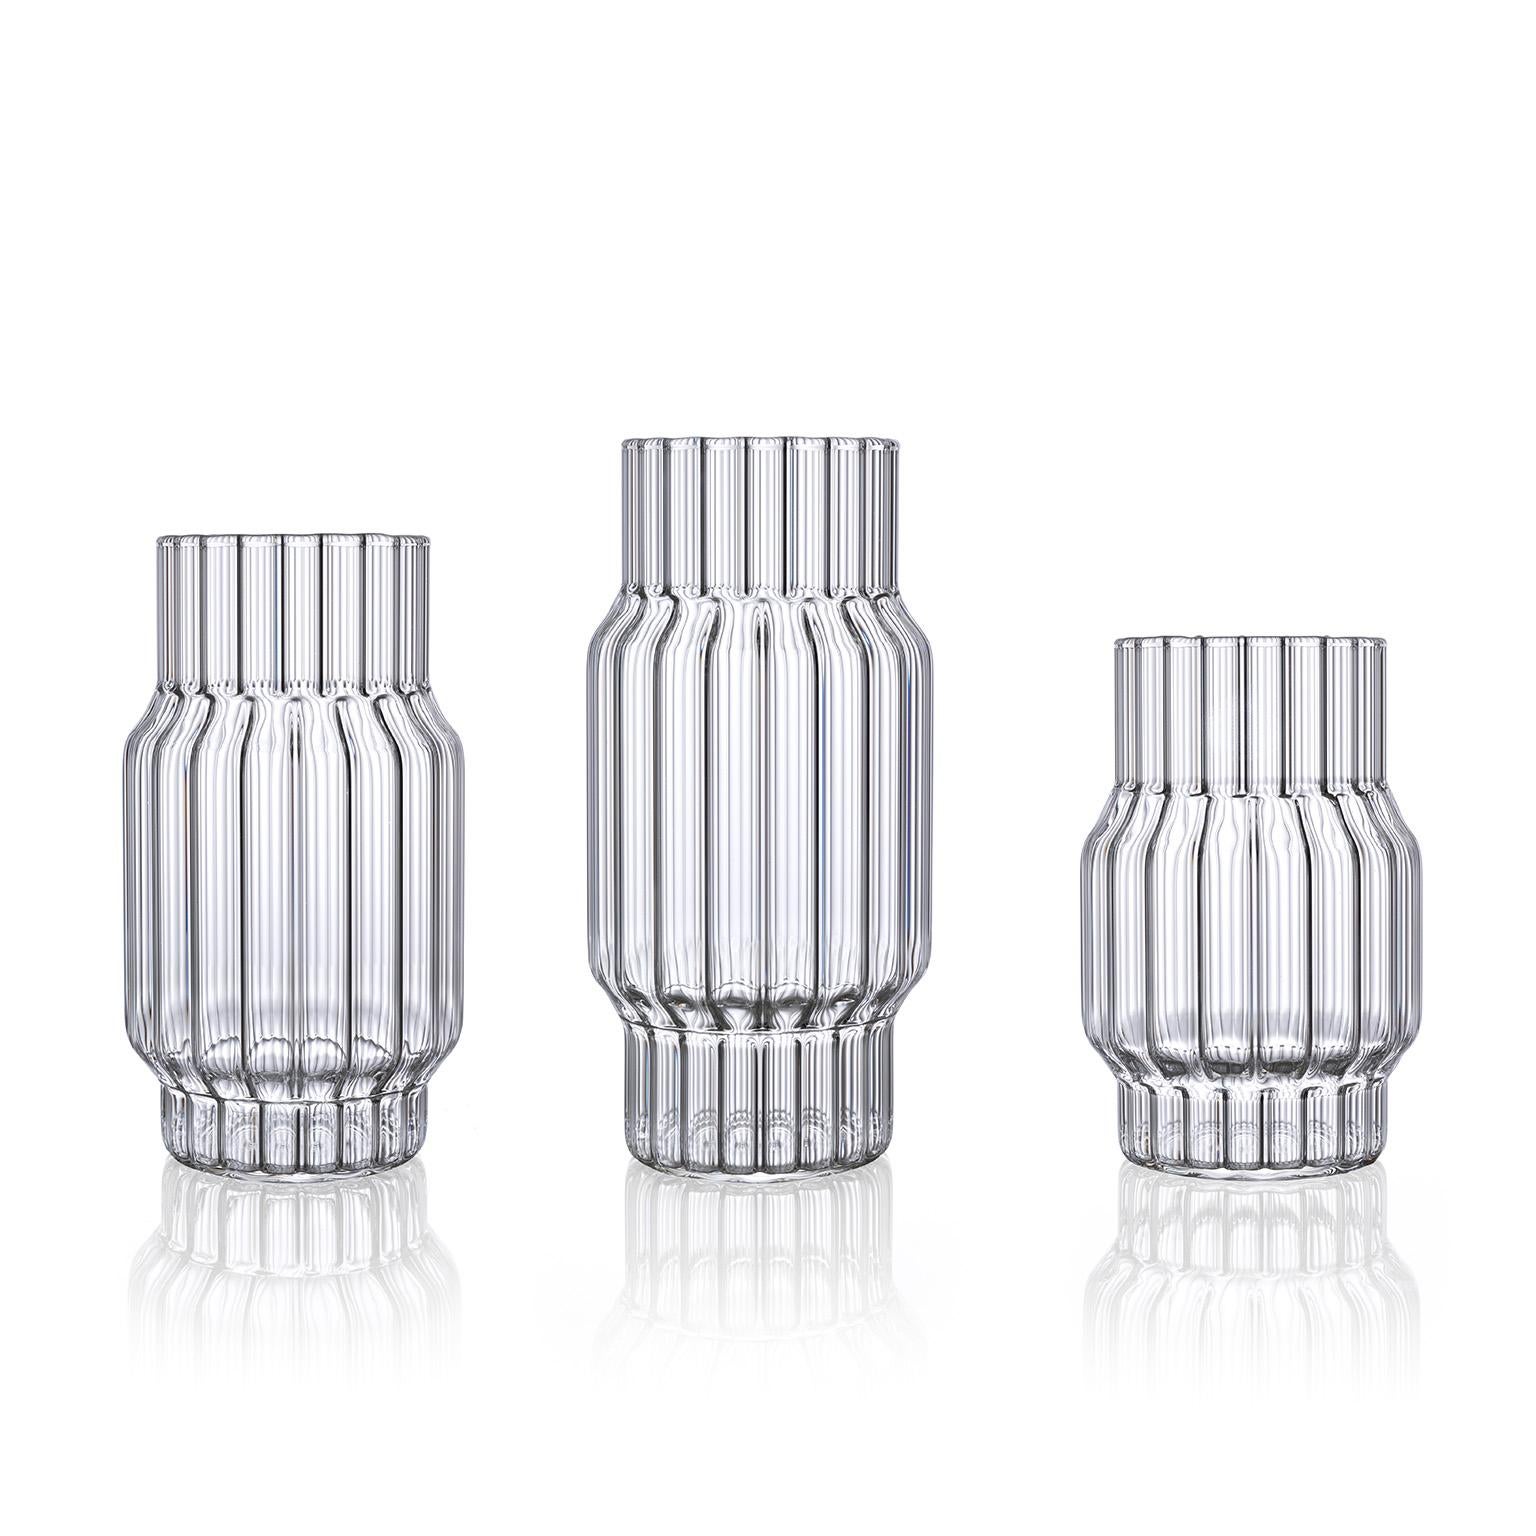 Fferrone Contemporary Tschechisches Glas Albany Kleine geriffelte Vase Handcrafted (Moderne)